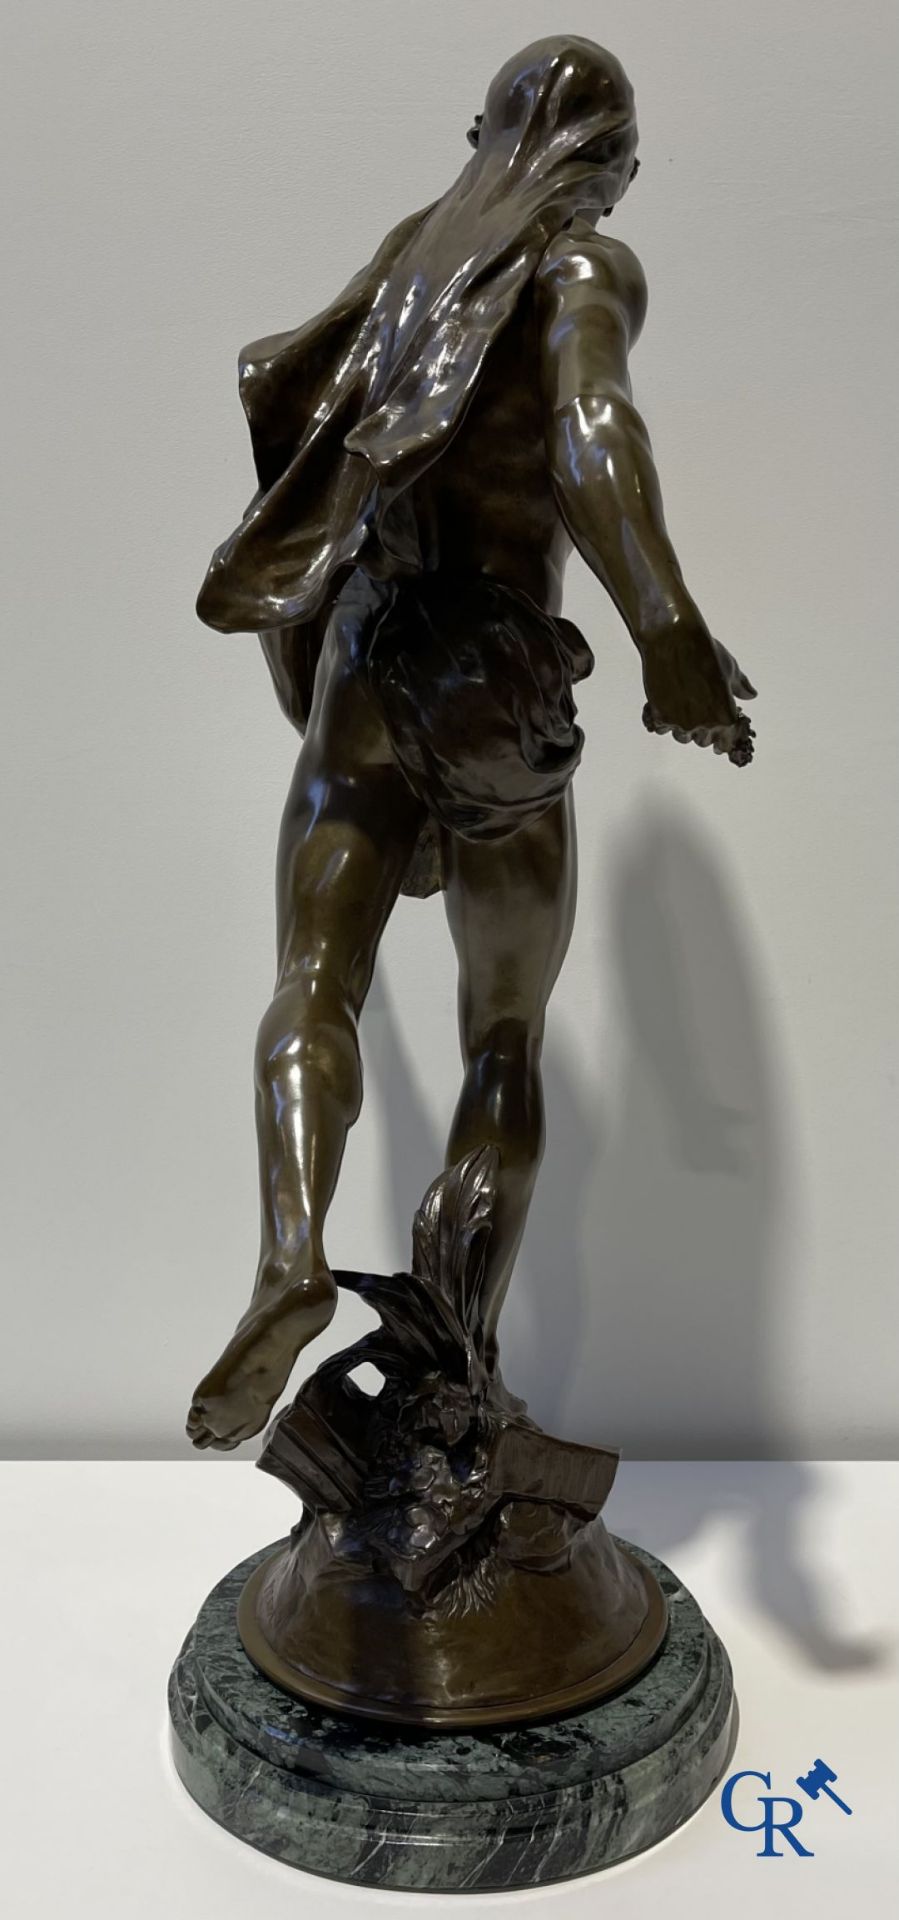 Emile Louis Picault (1833-1915) Large bronze statue "Le Semeur d'idées"
Foundry stamp Collin & Cie P - Image 11 of 16